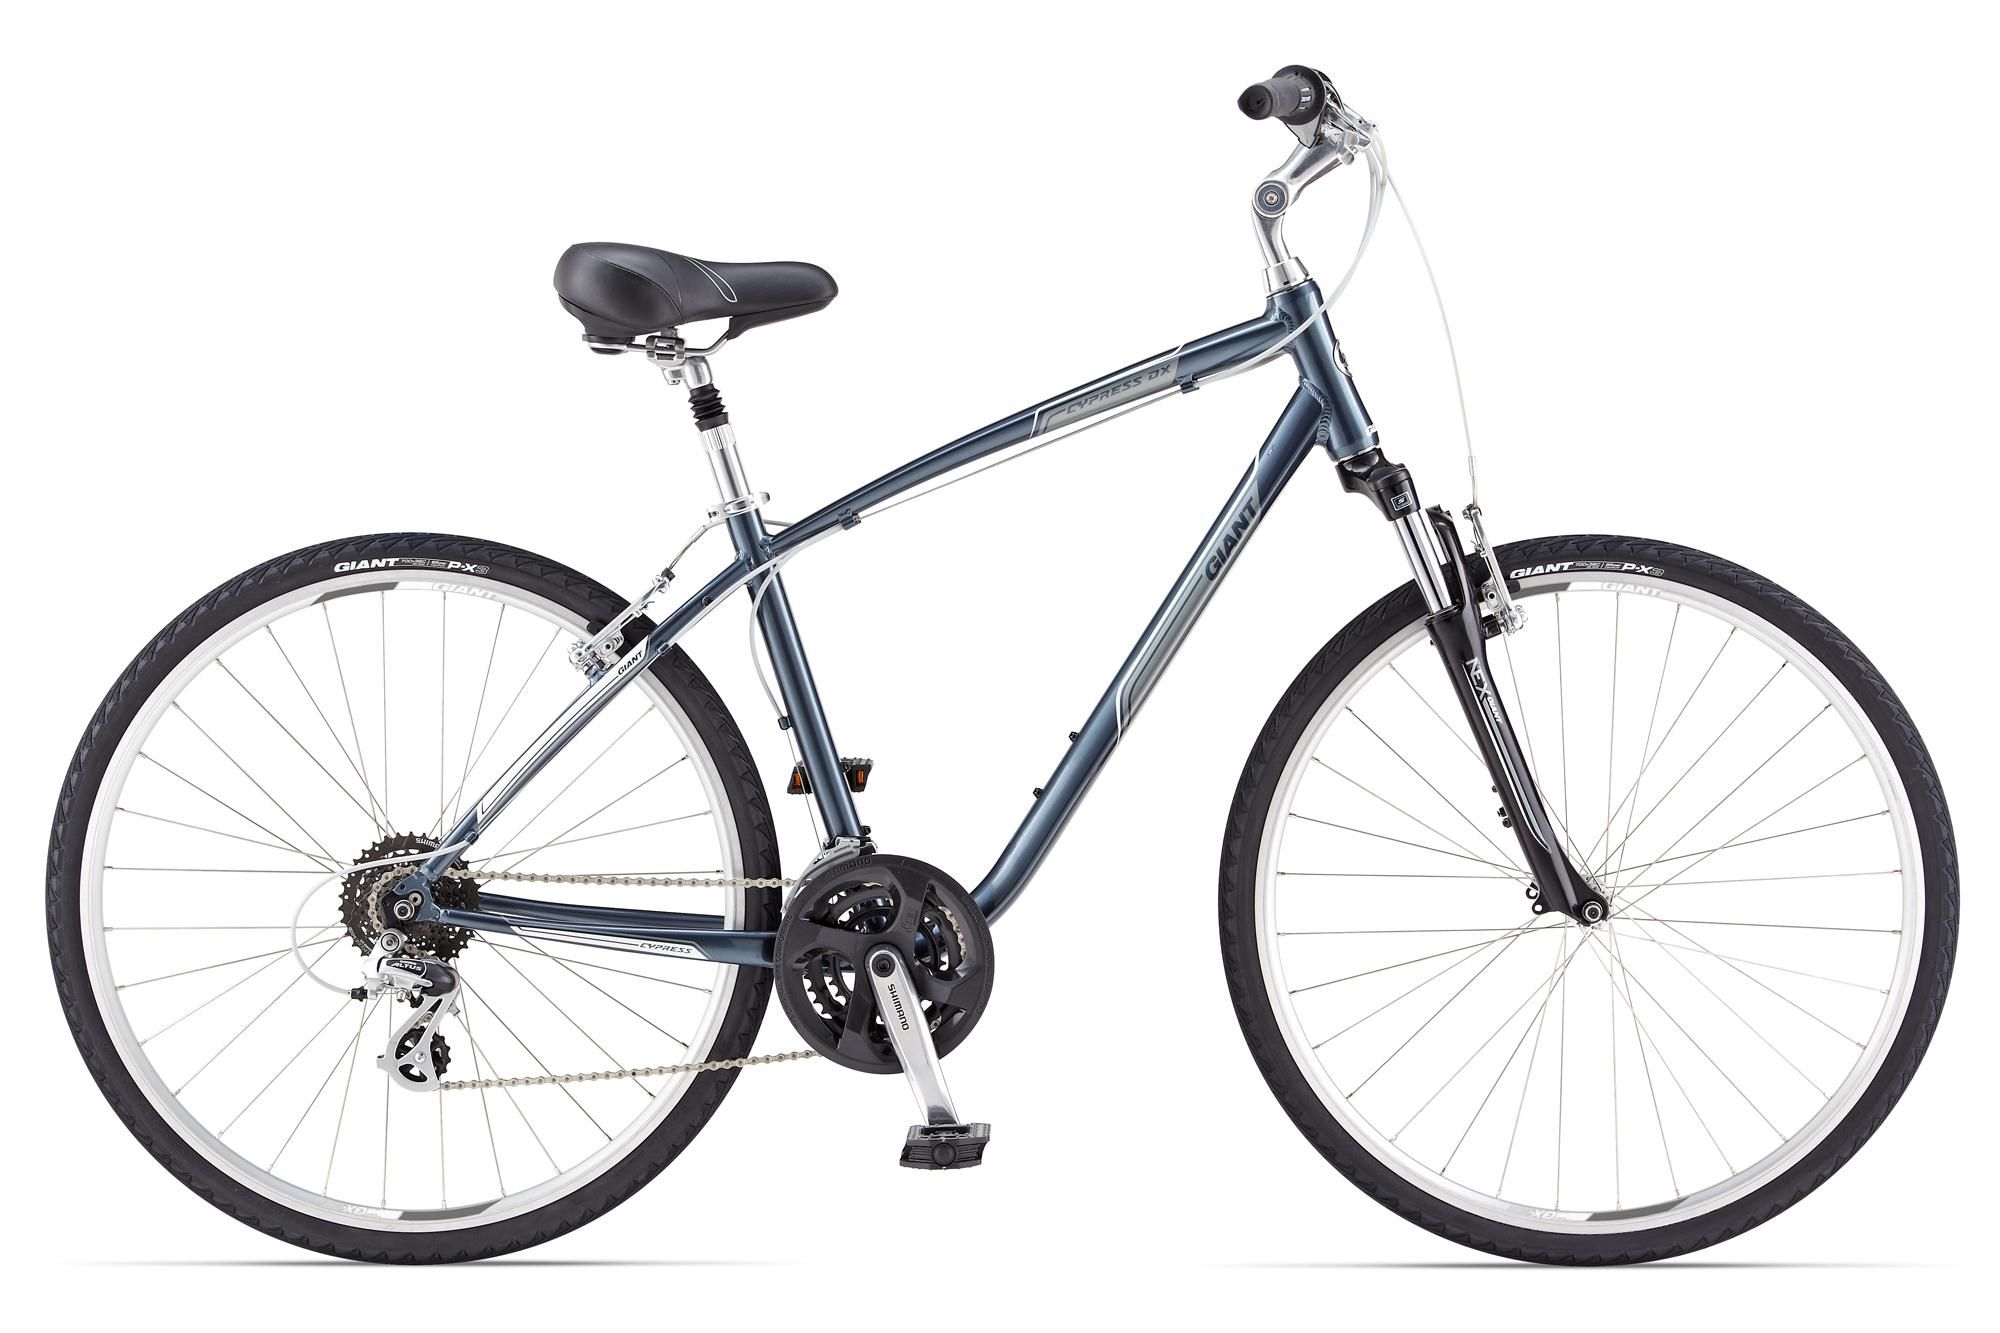  Отзывы о Велосипеде Giant Cypress DX 2014